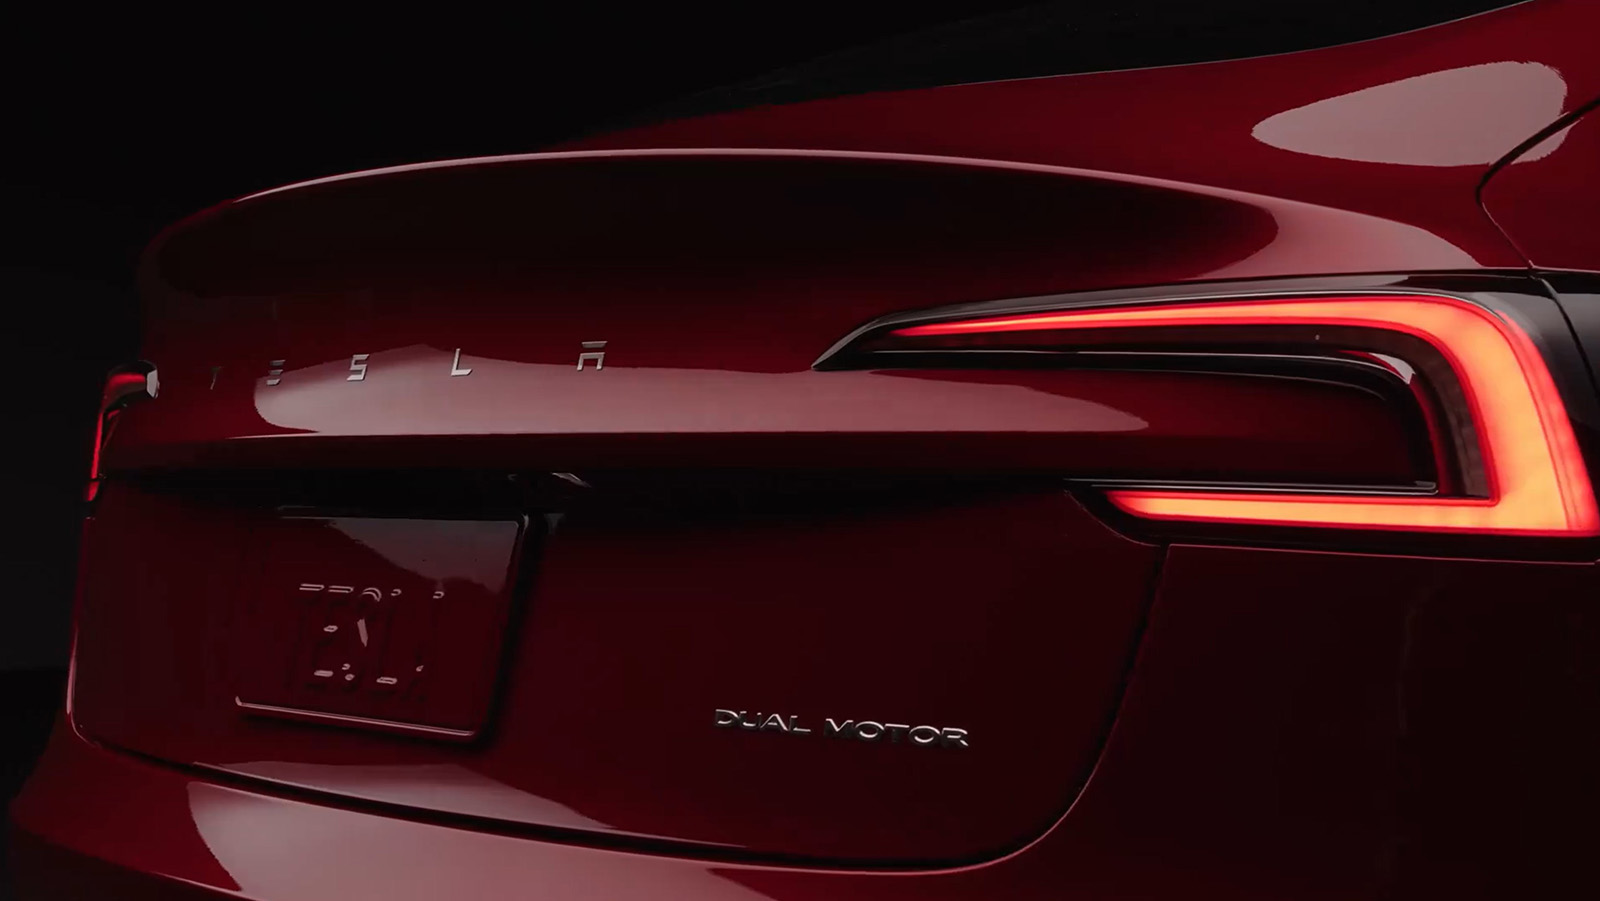 2024 Tesla Model 3 'Highland' Gets In-Depth Review [VIDEO] 